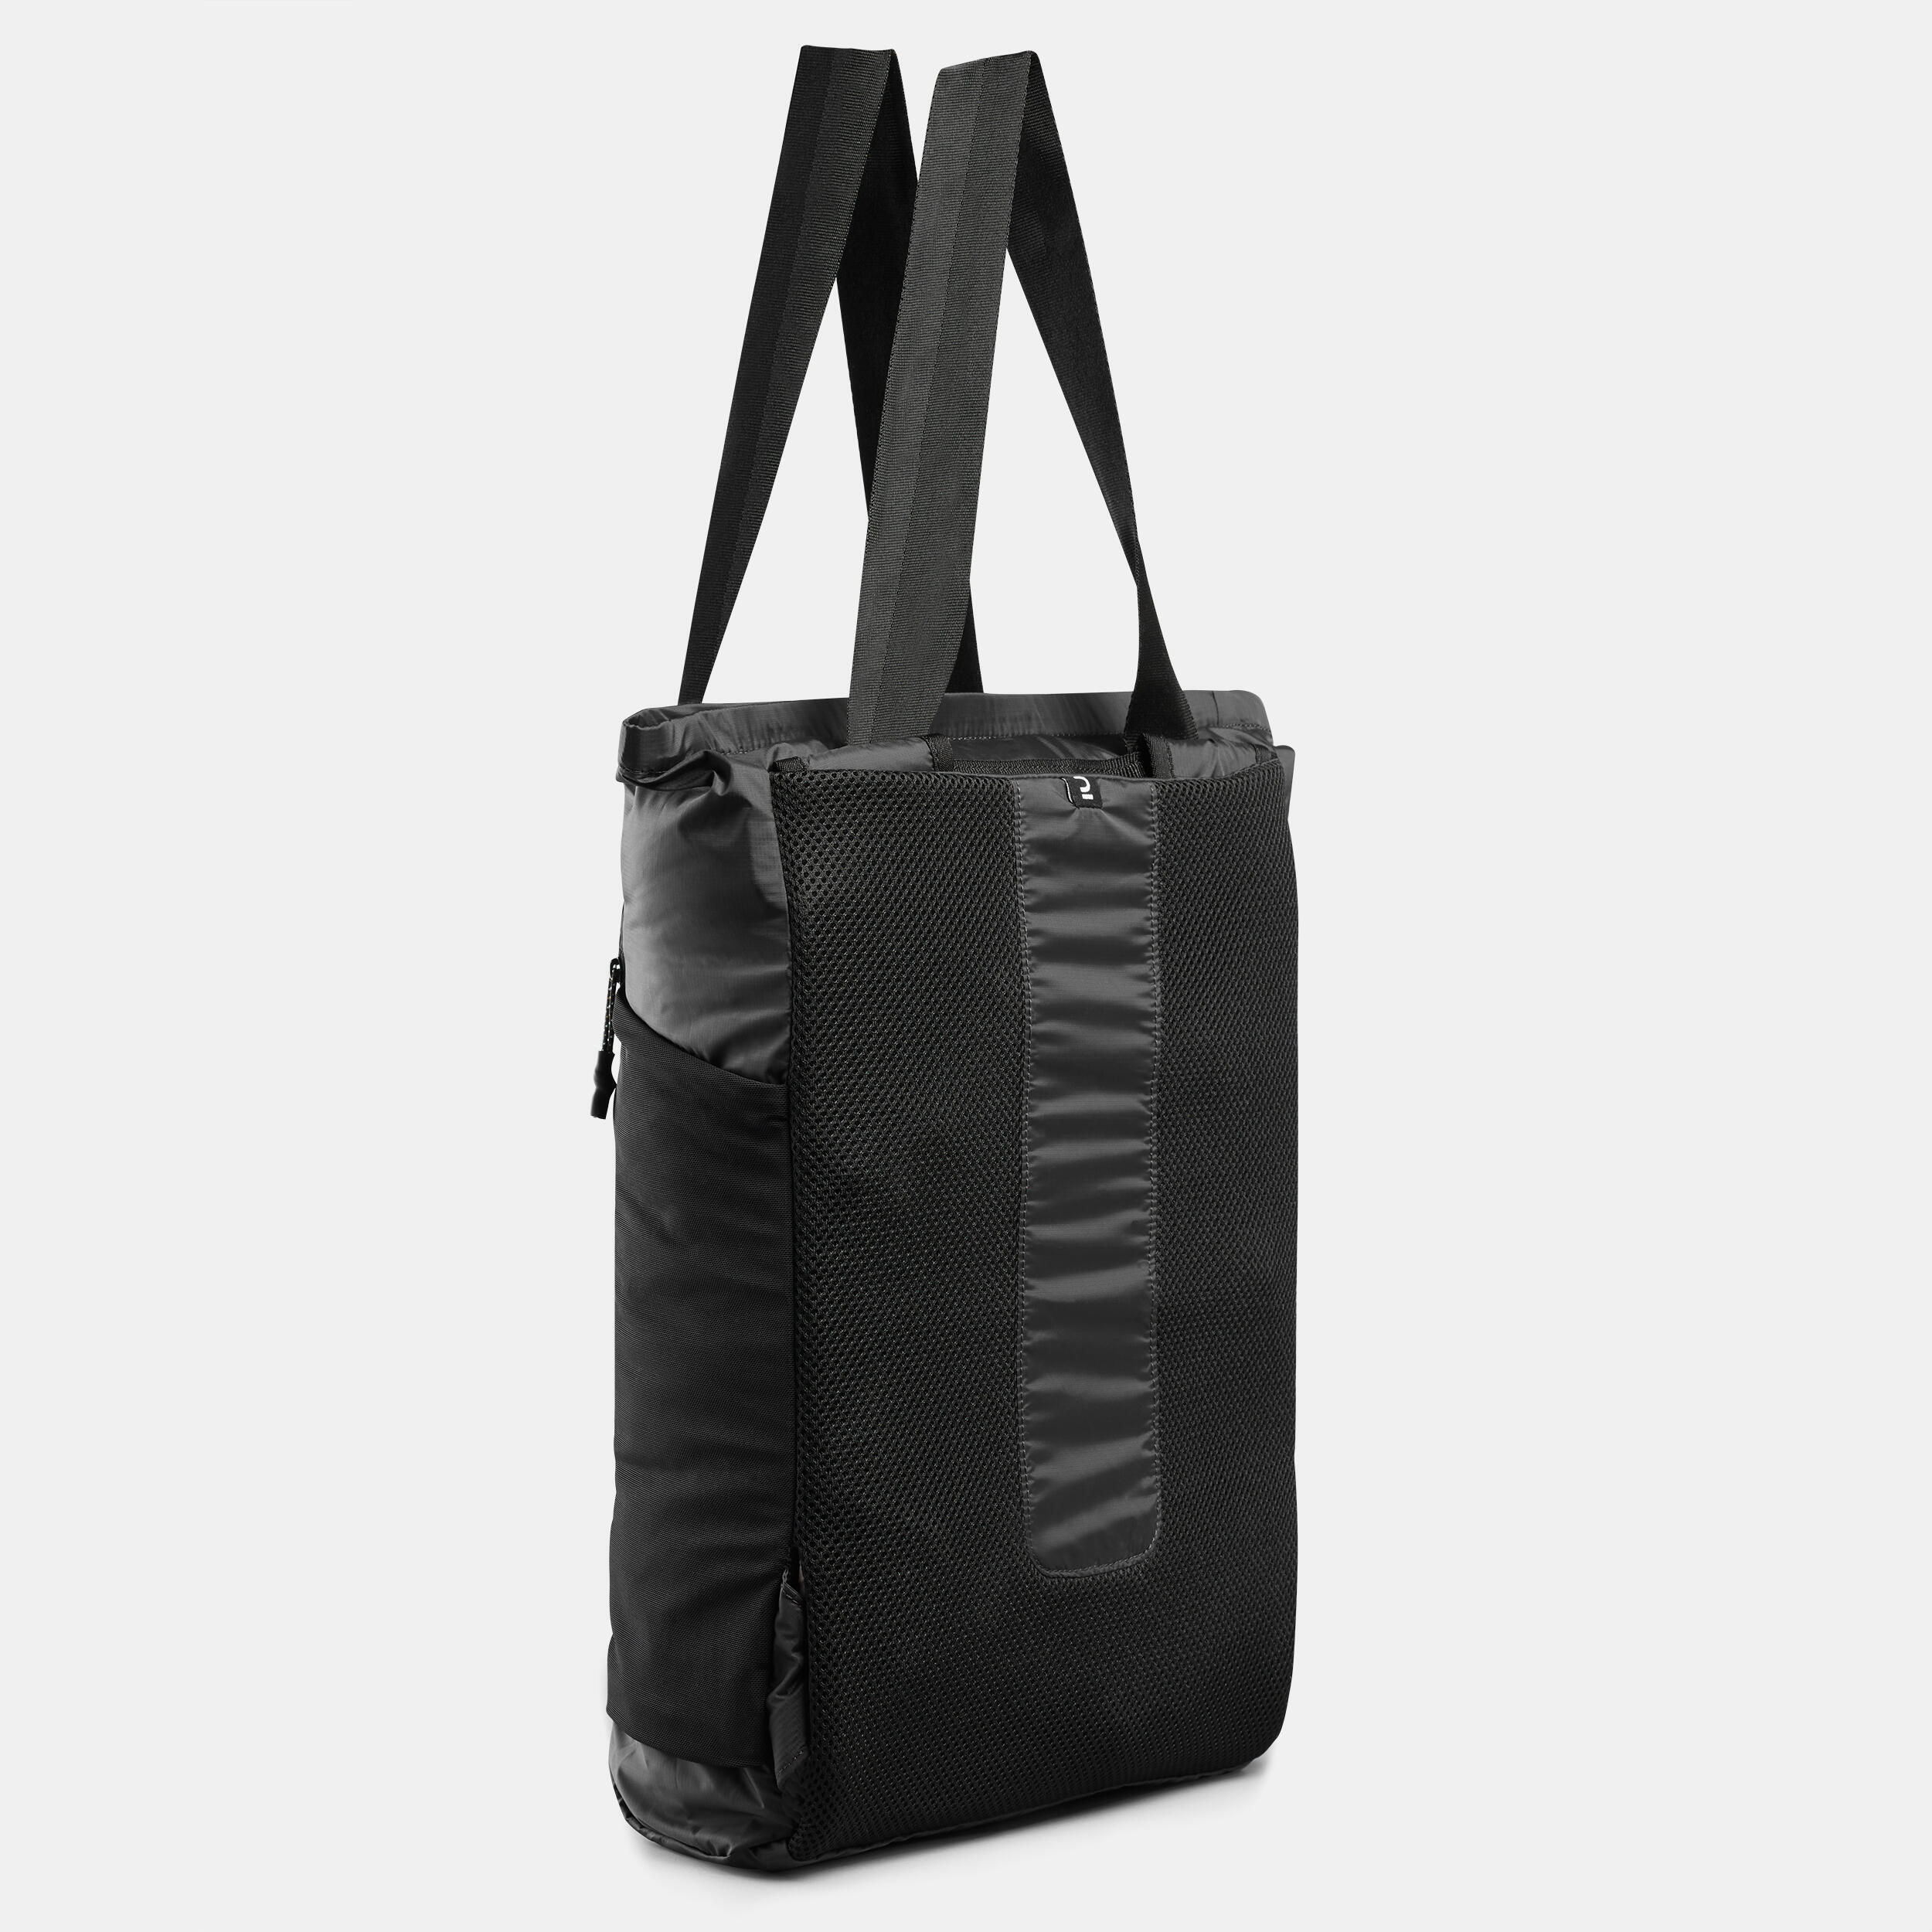 2in1 tote bag 15L - Travel 3/7